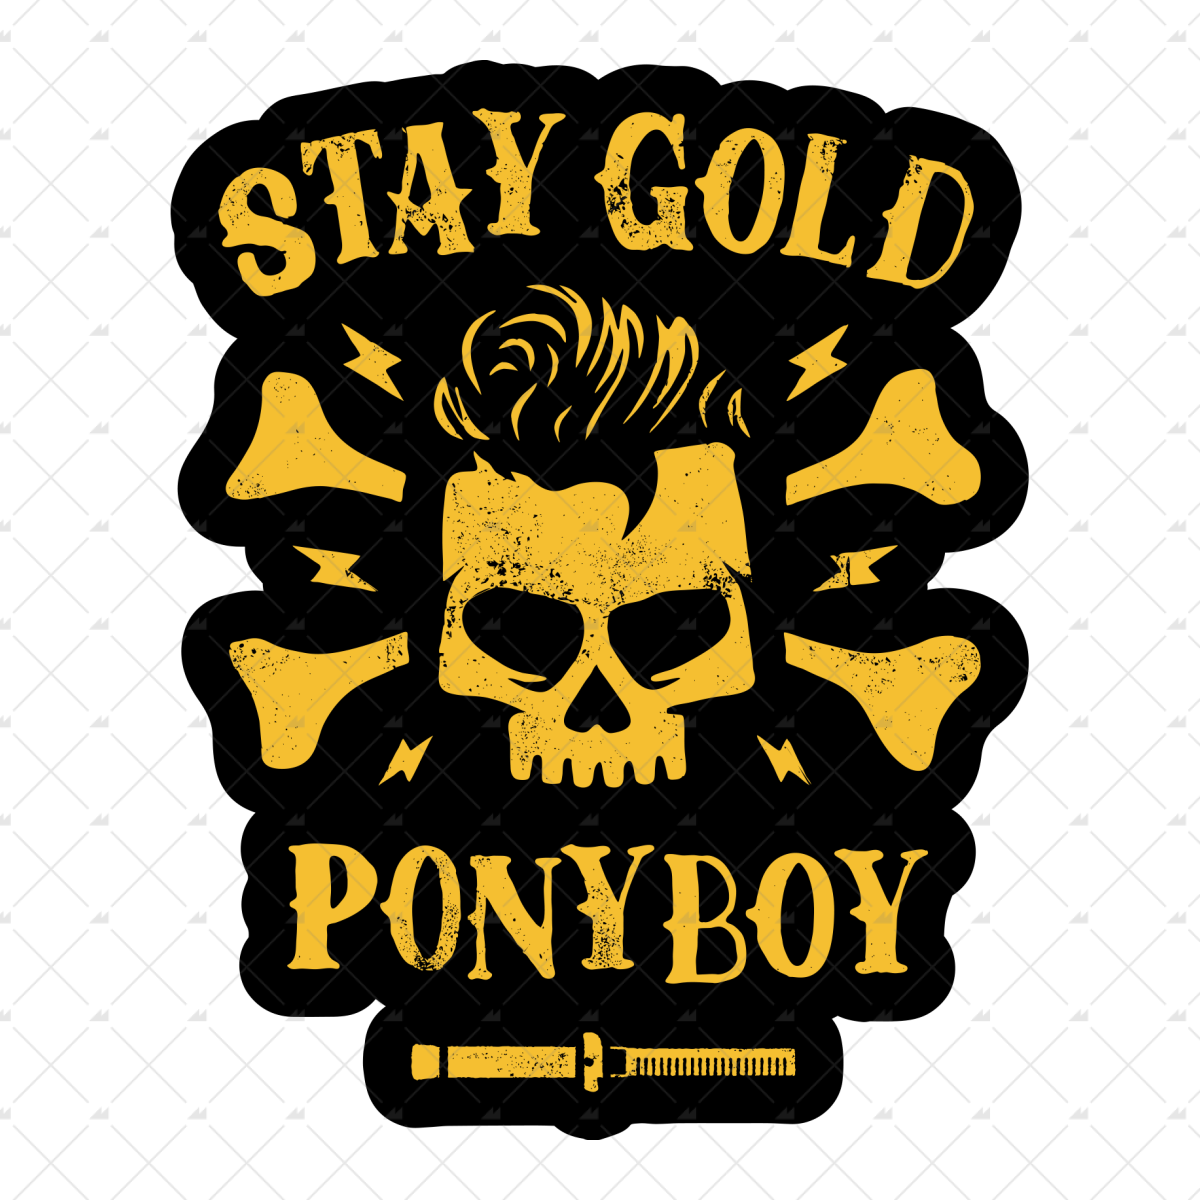 Stay Gold Ponyboy - Sticker